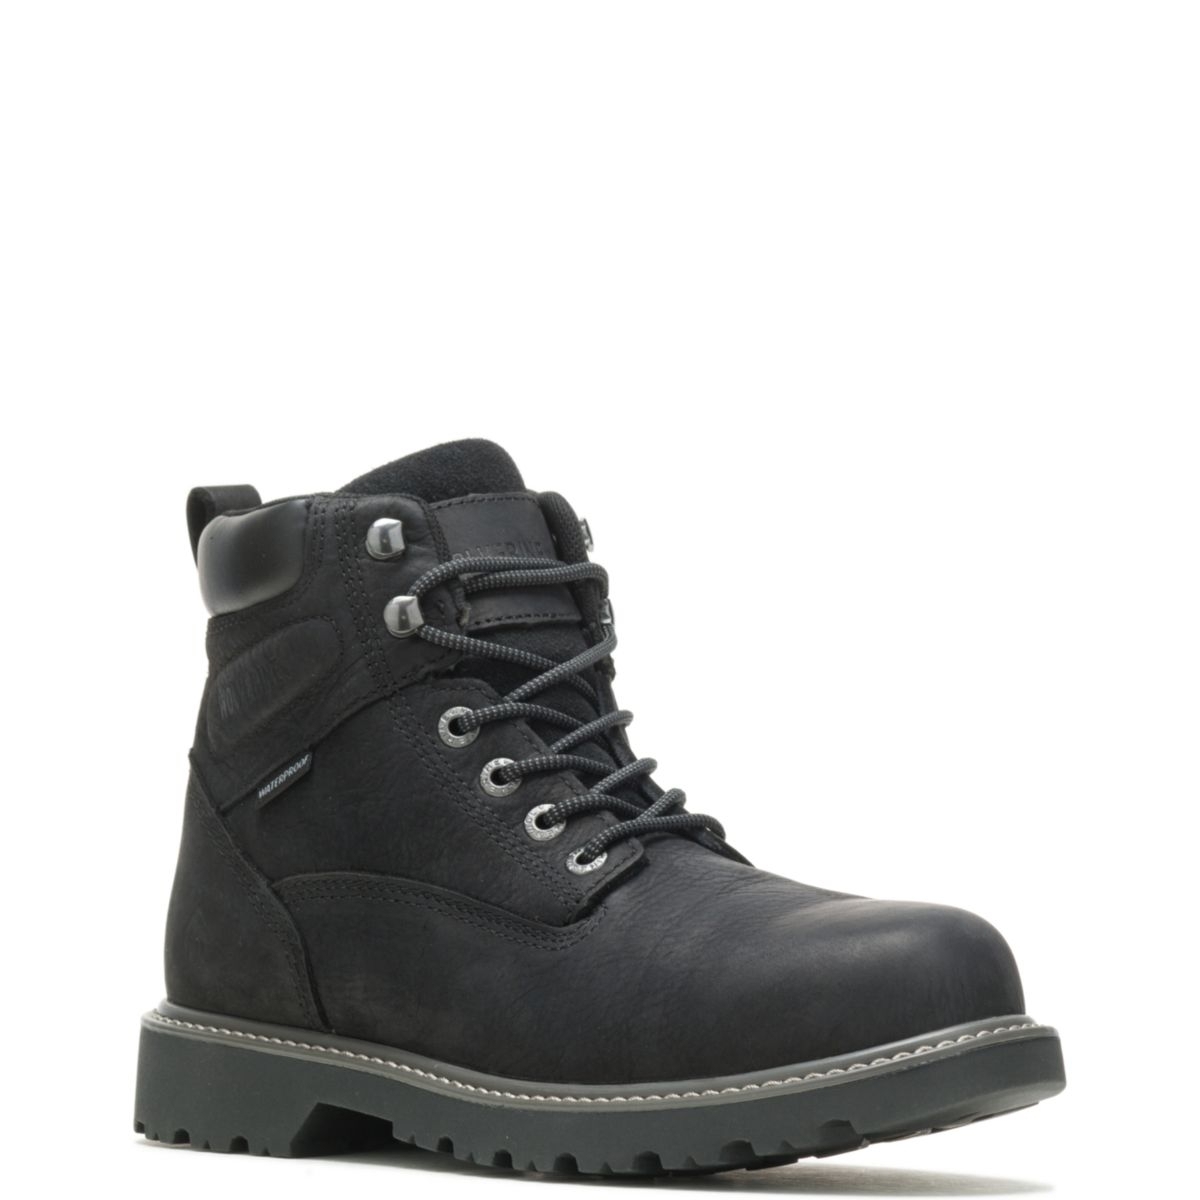 WOLVERINE Men's Floorhand 6 Waterproof Steel Toe Work Boot Black - W10694 BLACK - BLACK, 10 X-Wide